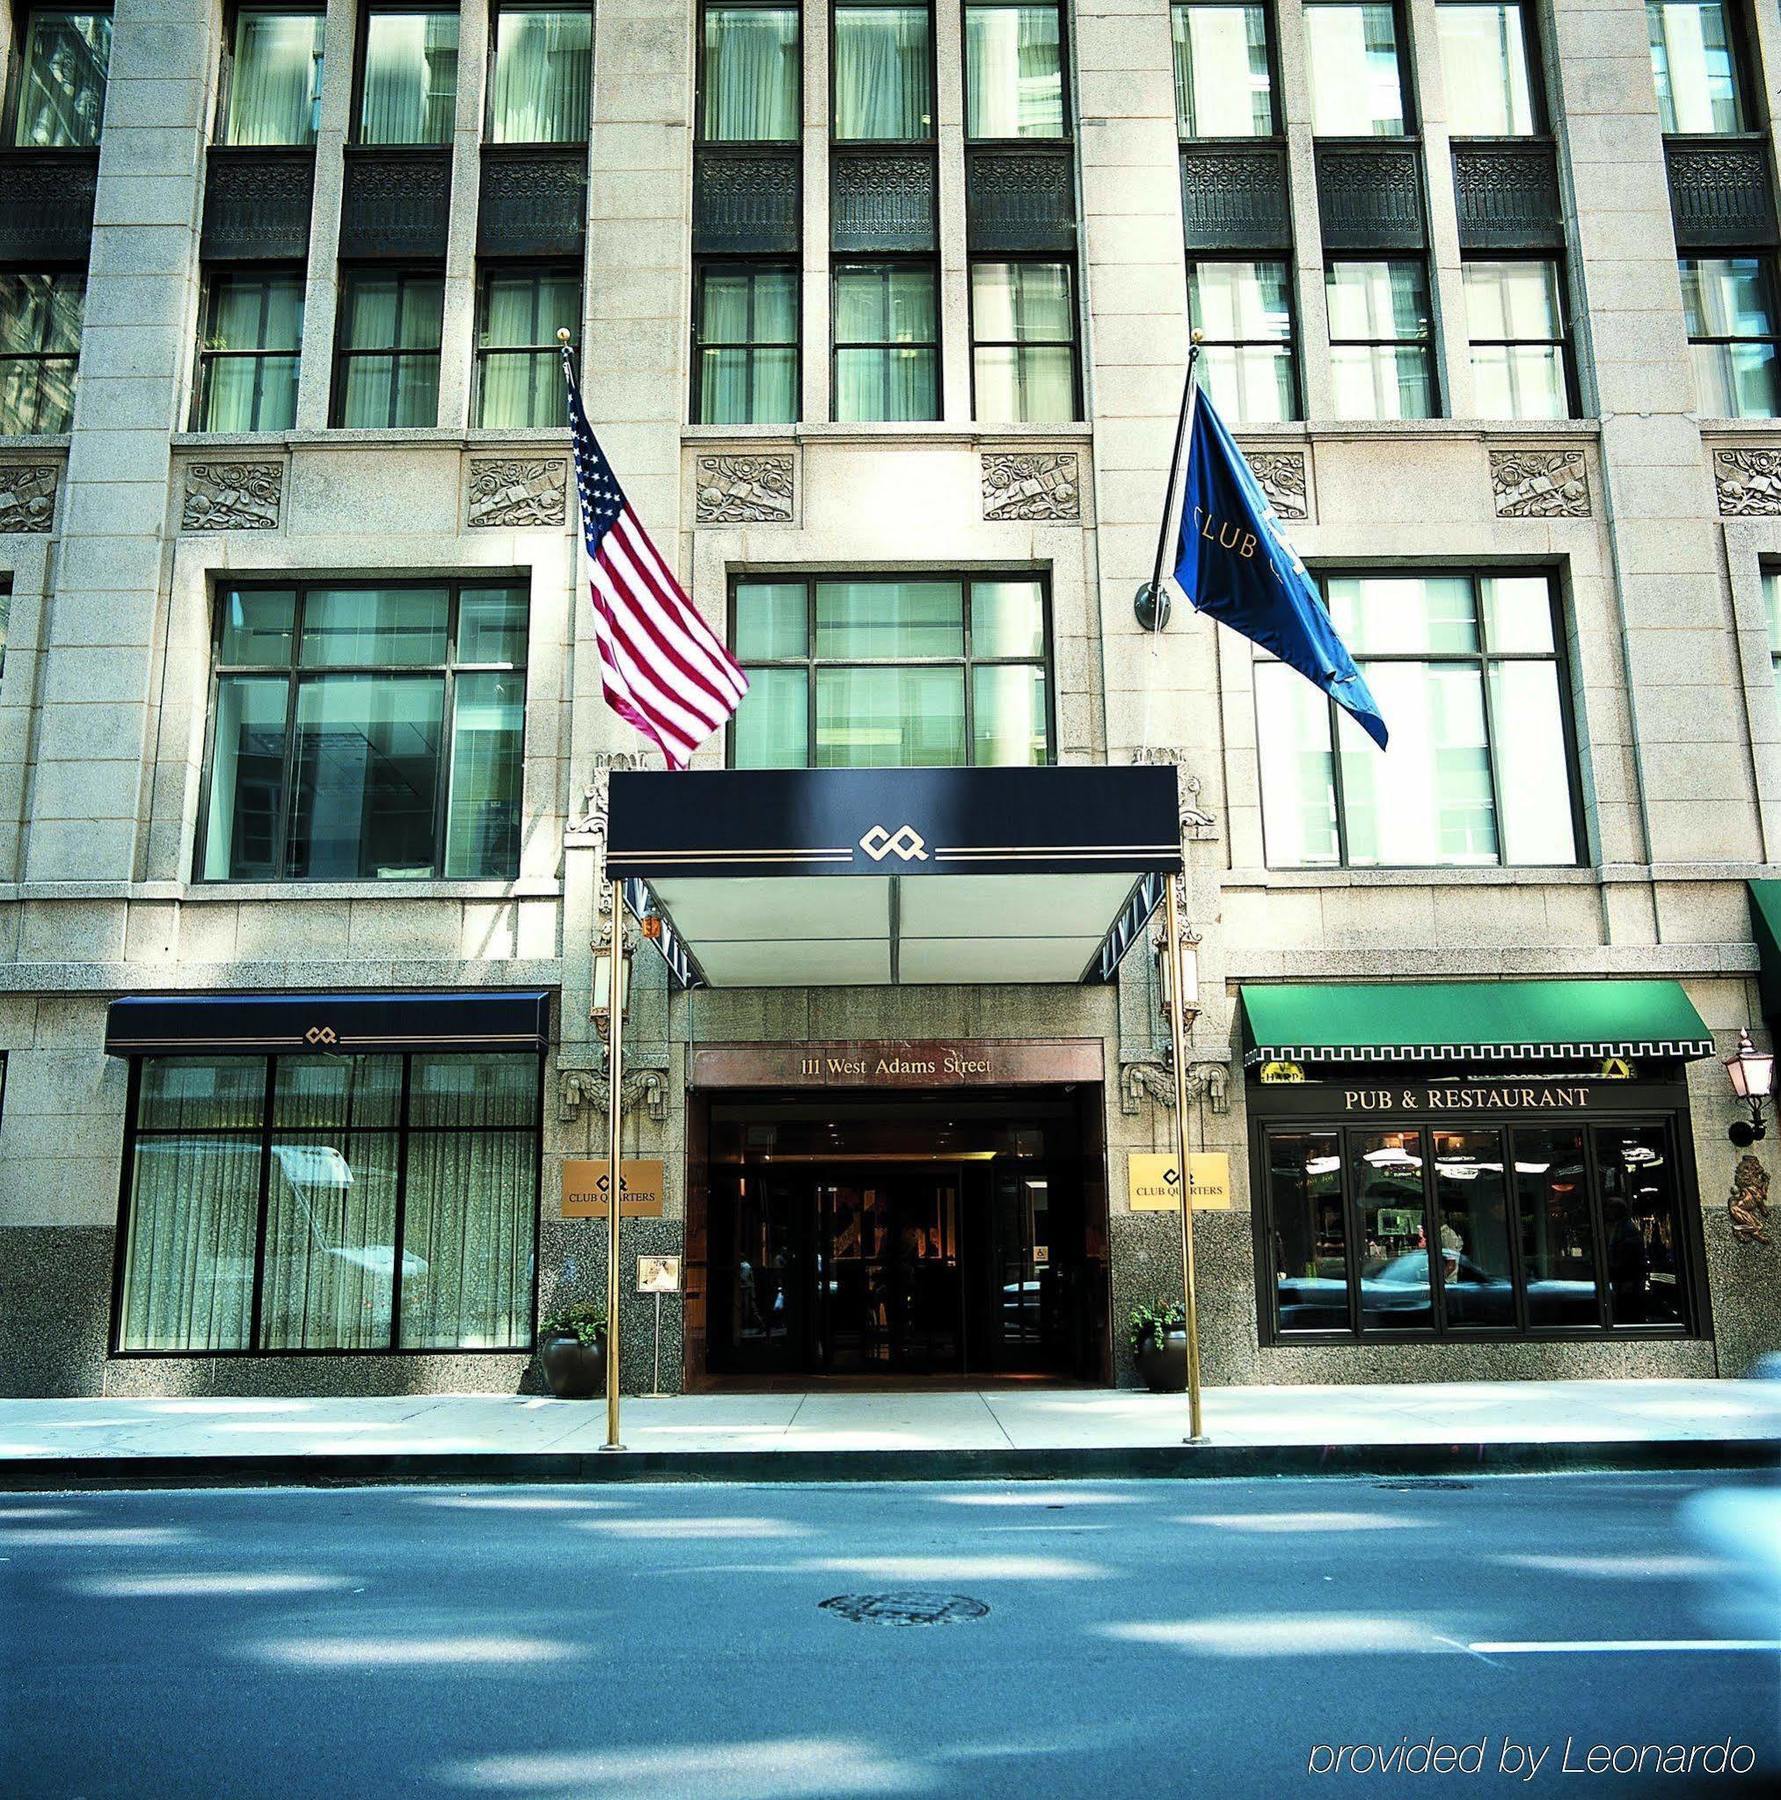 Central Loop Hotel Chicago Kültér fotó